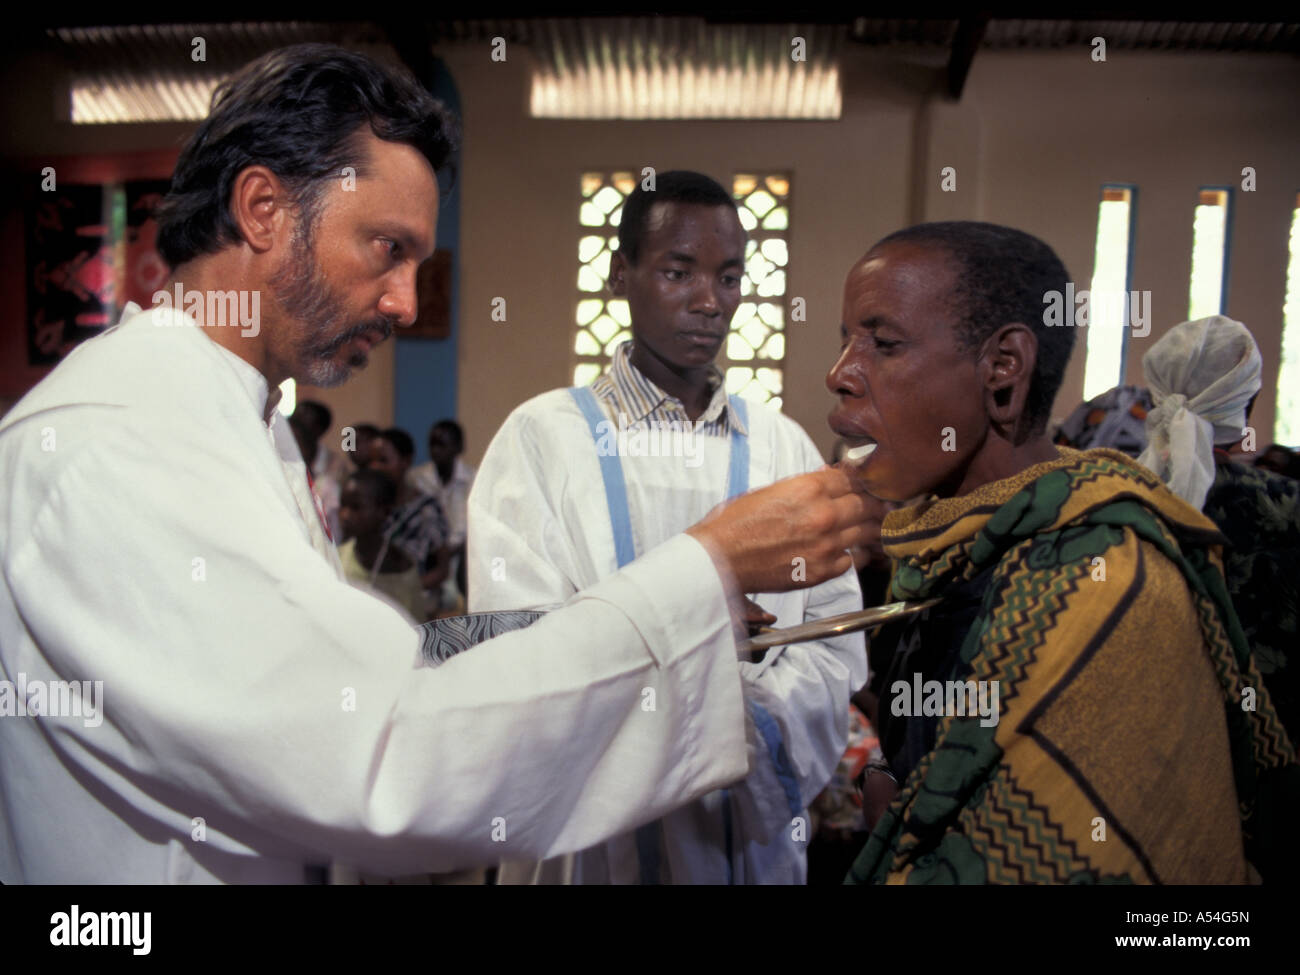 Painet hq1424 tanzania maryknoll catholic father jim eble giving eucharist easter sunday issenye images missionary religion Stock Photo